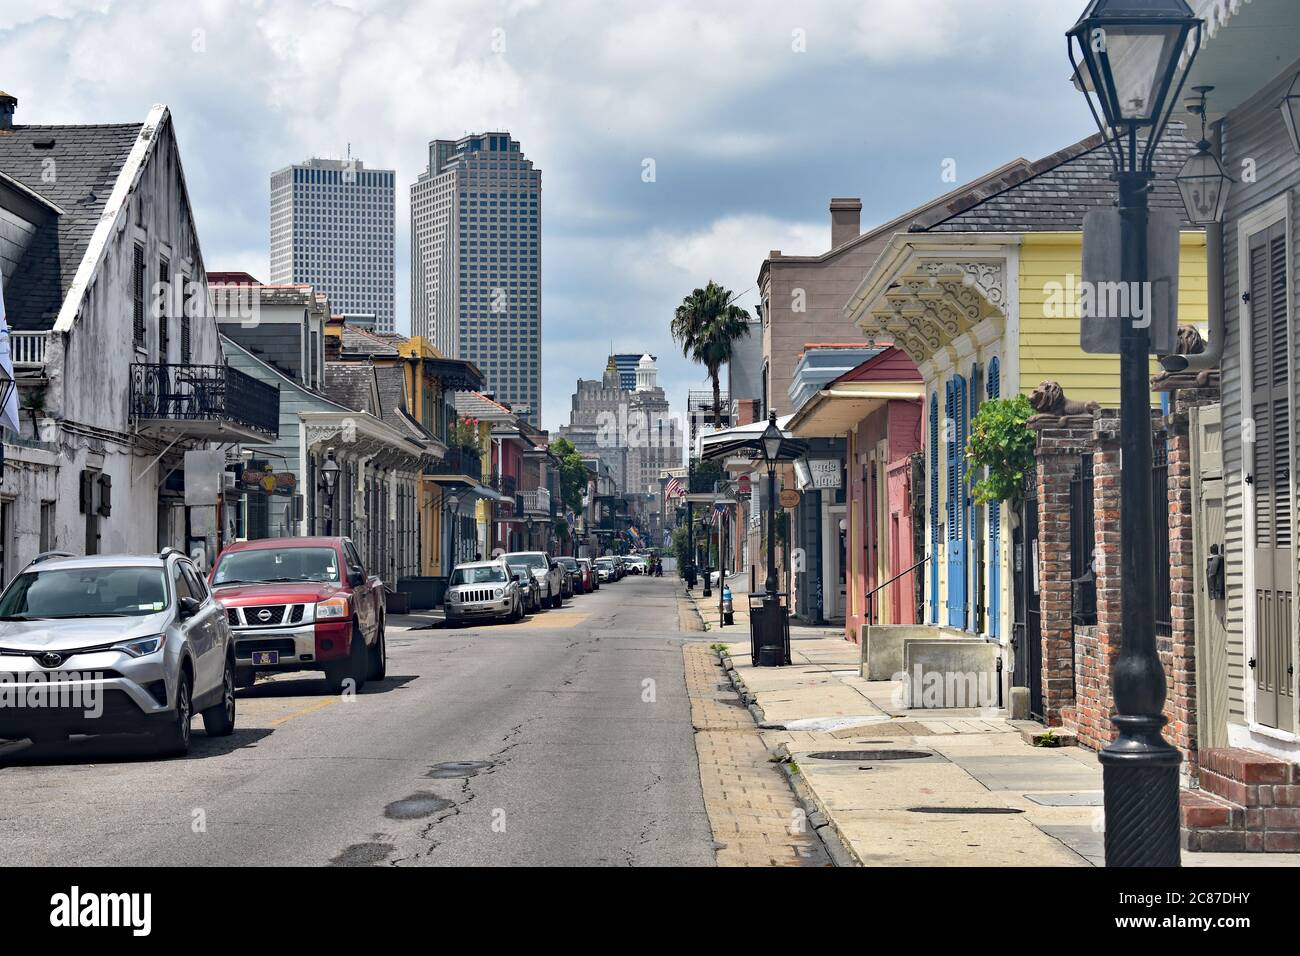 Das ruhige Ende der Bourbon Street mit Blick auf die Innenstadt von New Orleans. Bunte Kreolarchitektur und Autos, die auf einer Seite der Straße geparkt sind. Stockfoto